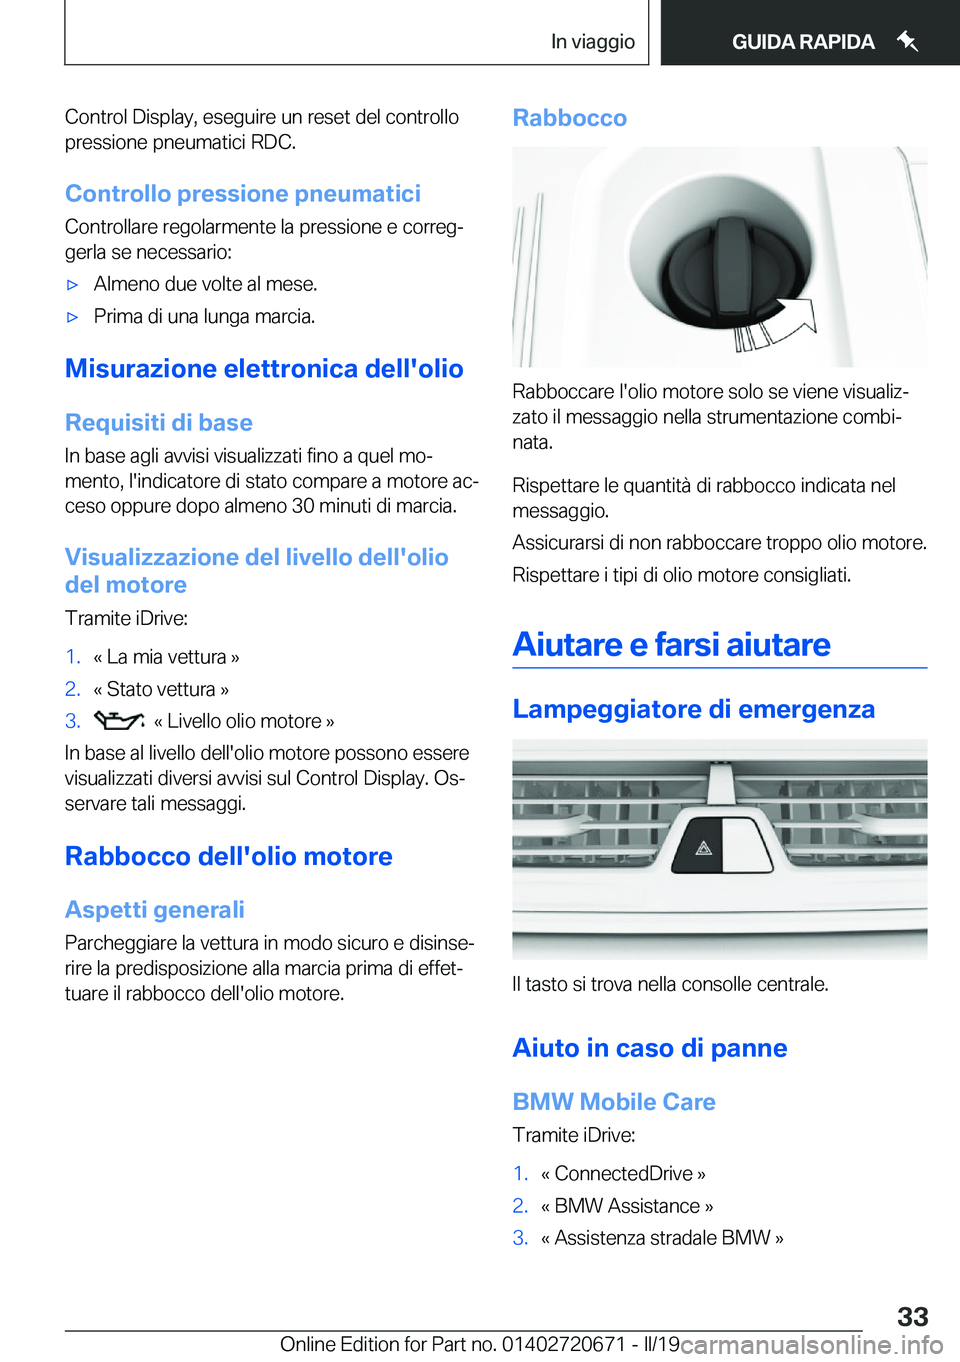 BMW M5 2019  Libretti Di Uso E manutenzione (in Italian) �C�o�n�t�r�o�l��D�i�s�p�l�a�y�,��e�s�e�g�u�i�r�e��u�n��r�e�s�e�t��d�e�l��c�o�n�t�r�o�l�l�o�p�r�e�s�s�i�o�n�e��p�n�e�u�m�a�t�i�c�i��R�D�C�.
�C�o�n�t�r�o�l�l�o��p�r�e�s�s�i�o�n�e��p�n�e�u�m�a�